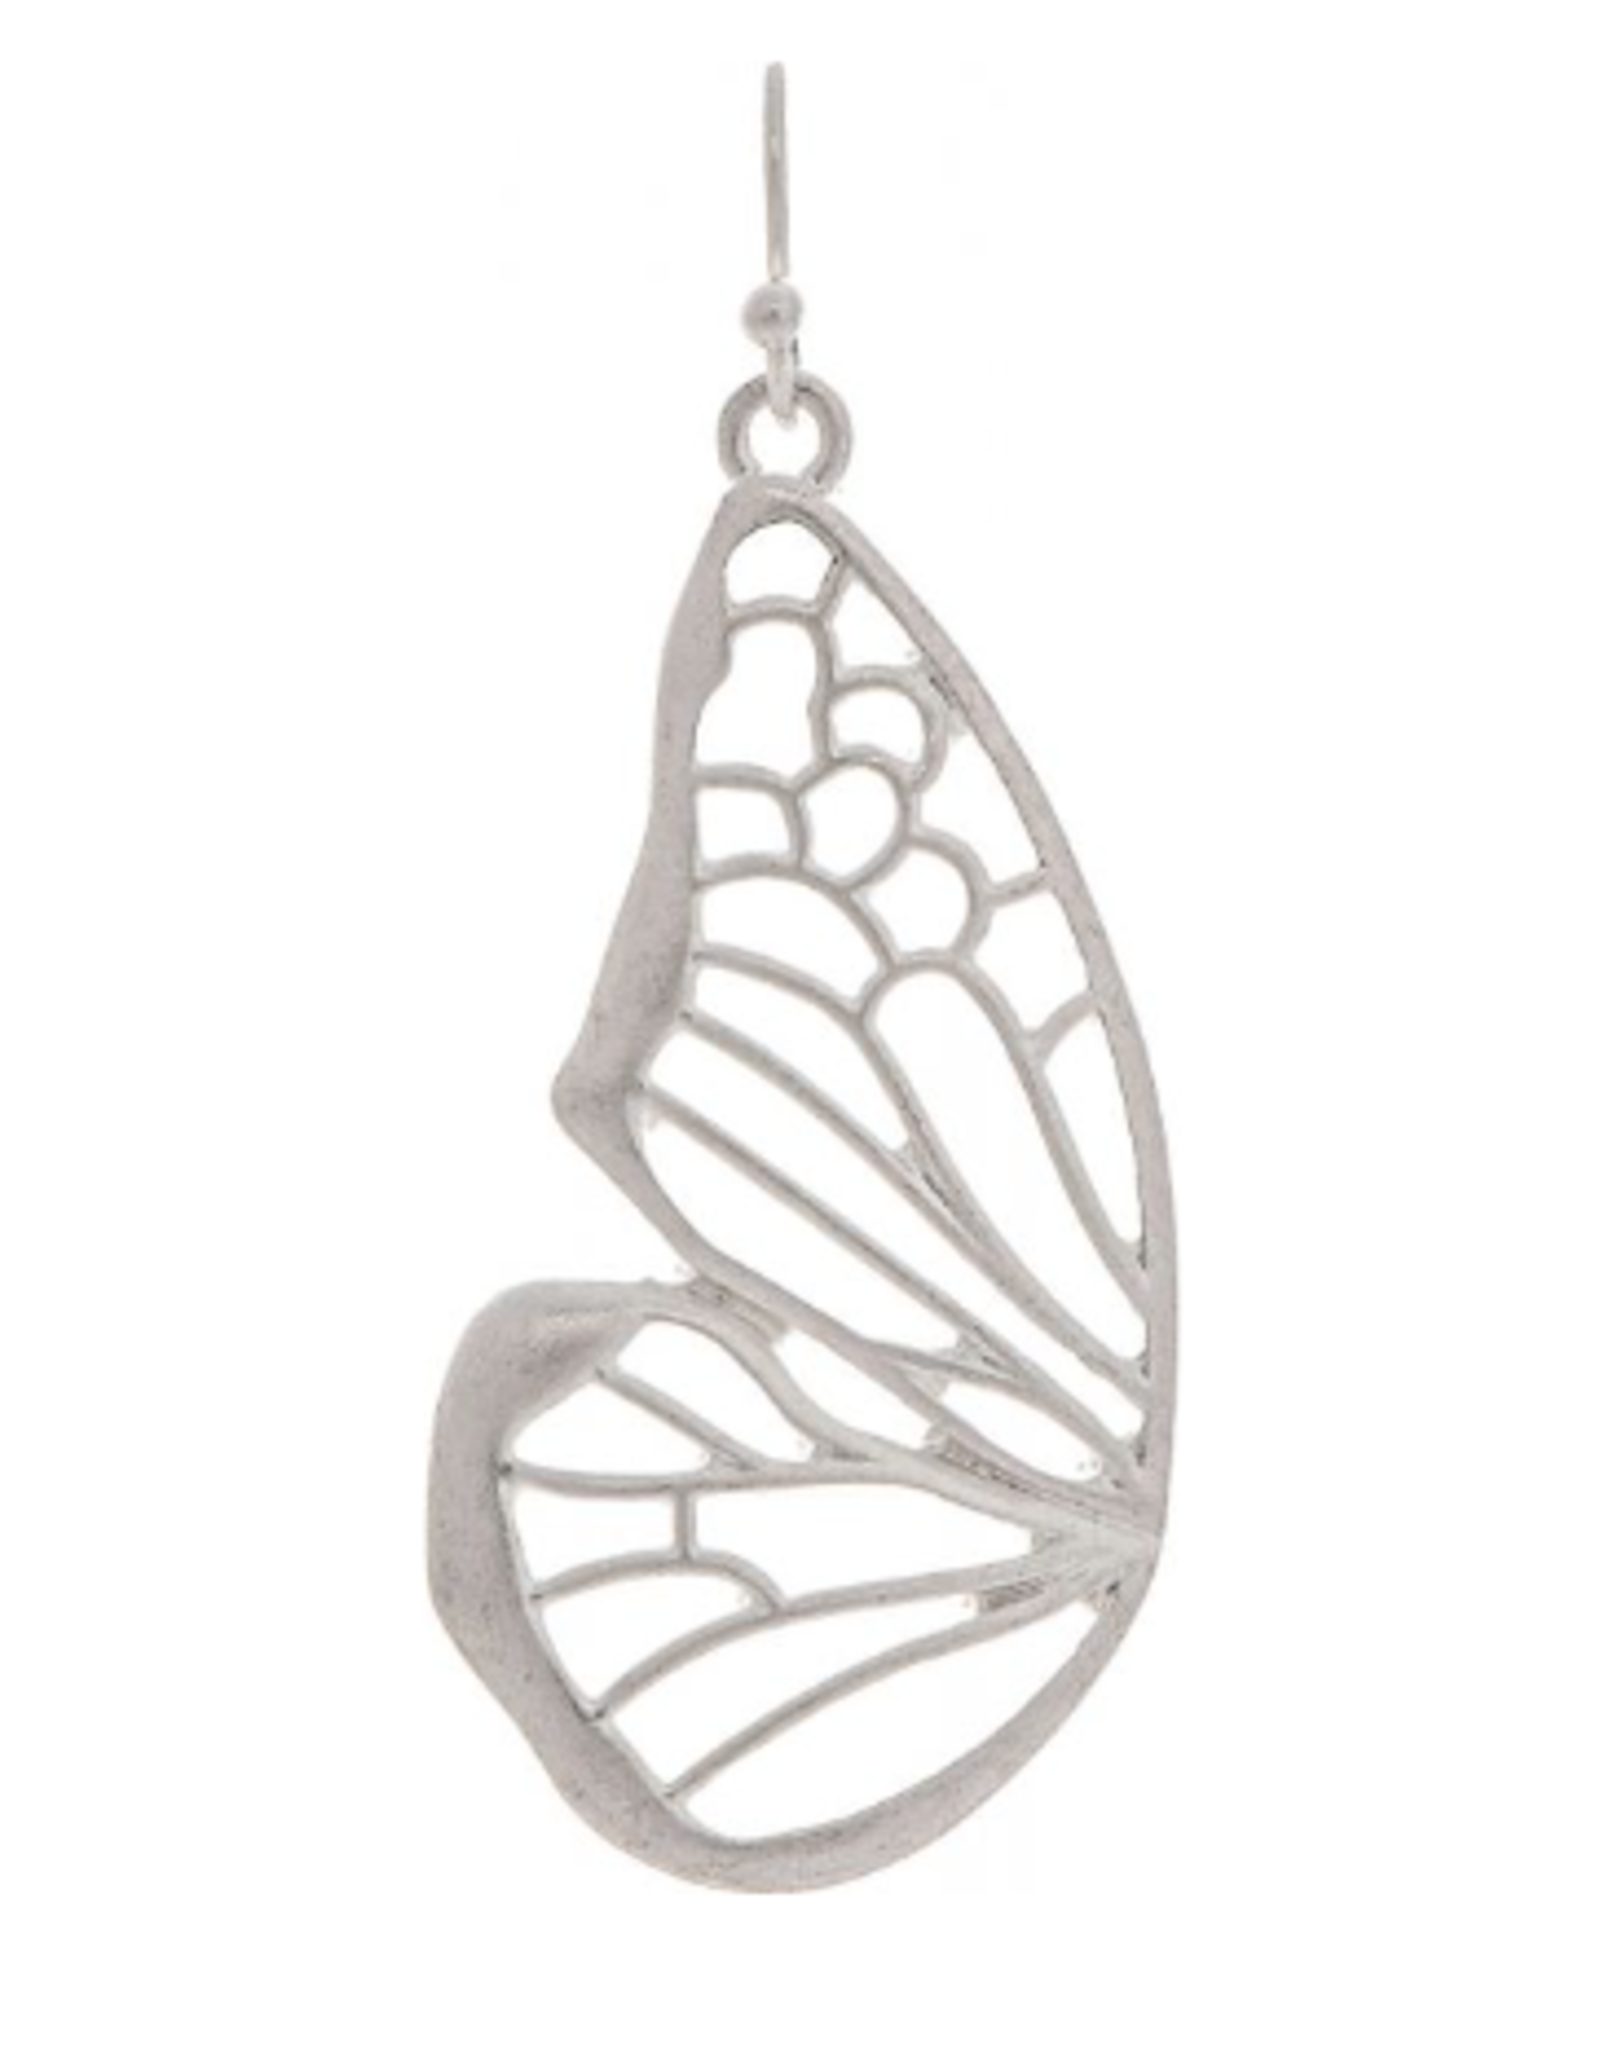 Rain: Matte Silver Butterfly Wings Earrings